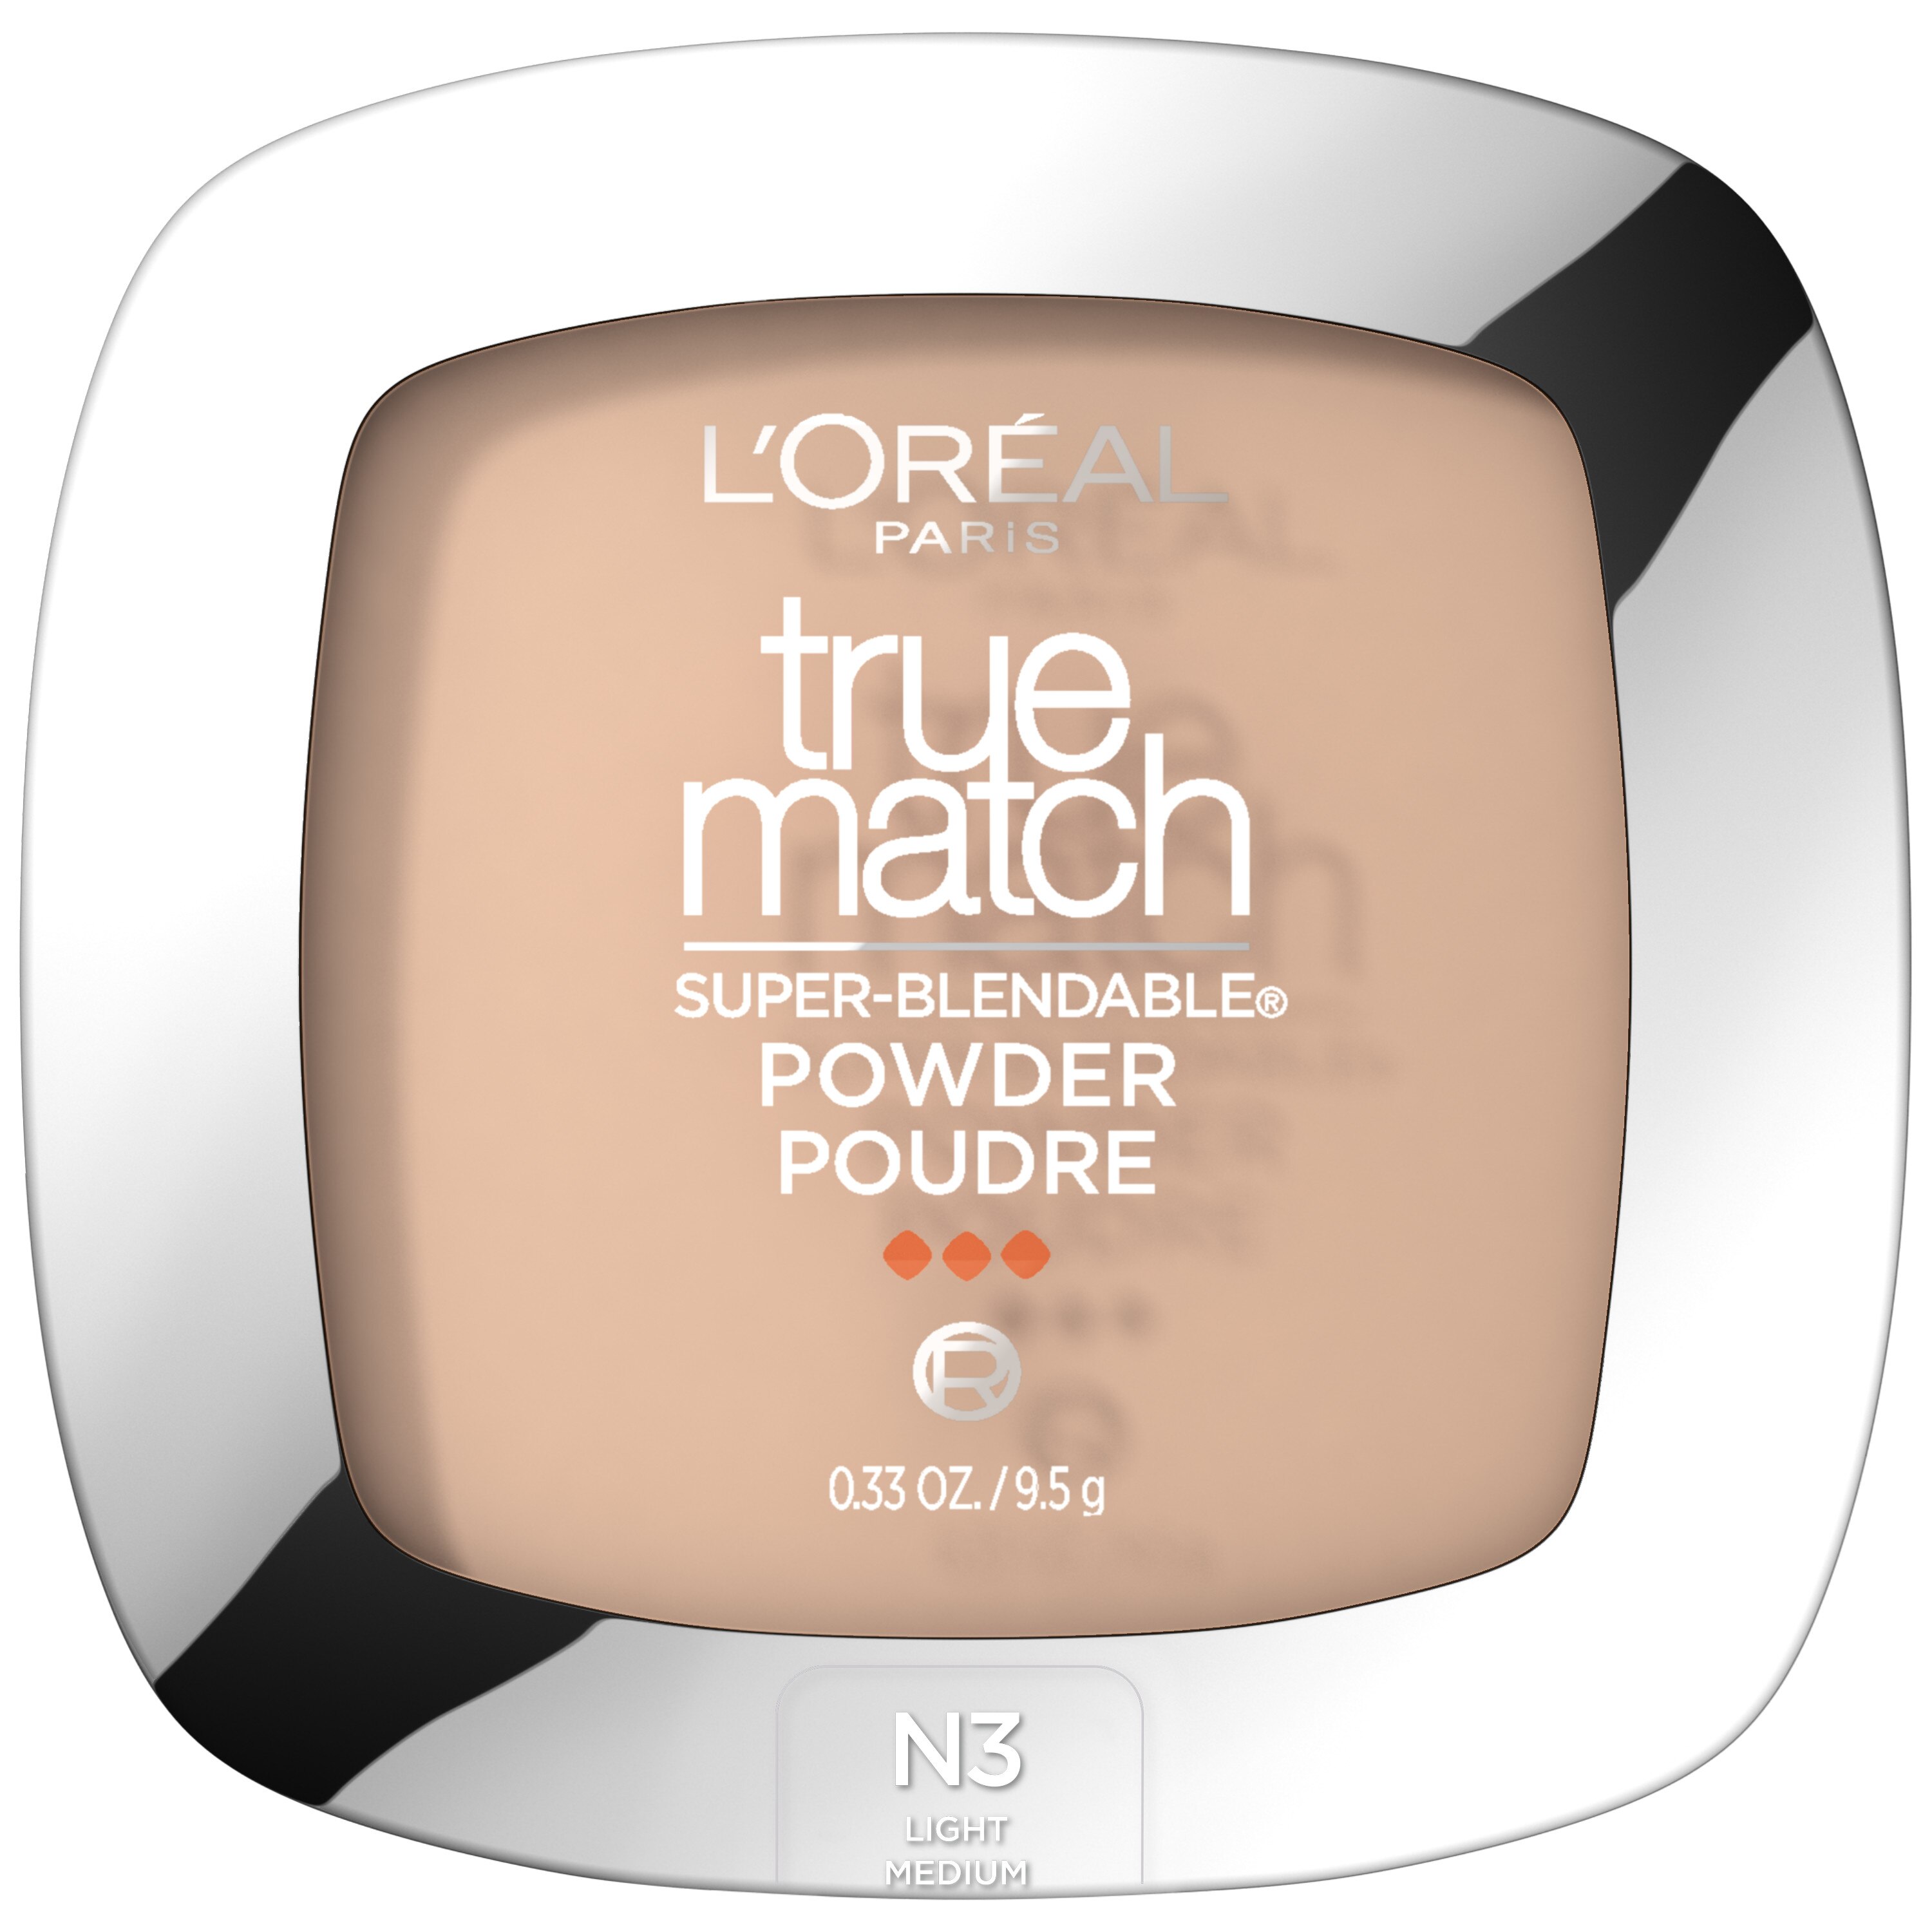 L'Oreal Paris True Match Super Blendable Powder, N3 Natural Buff , CVS